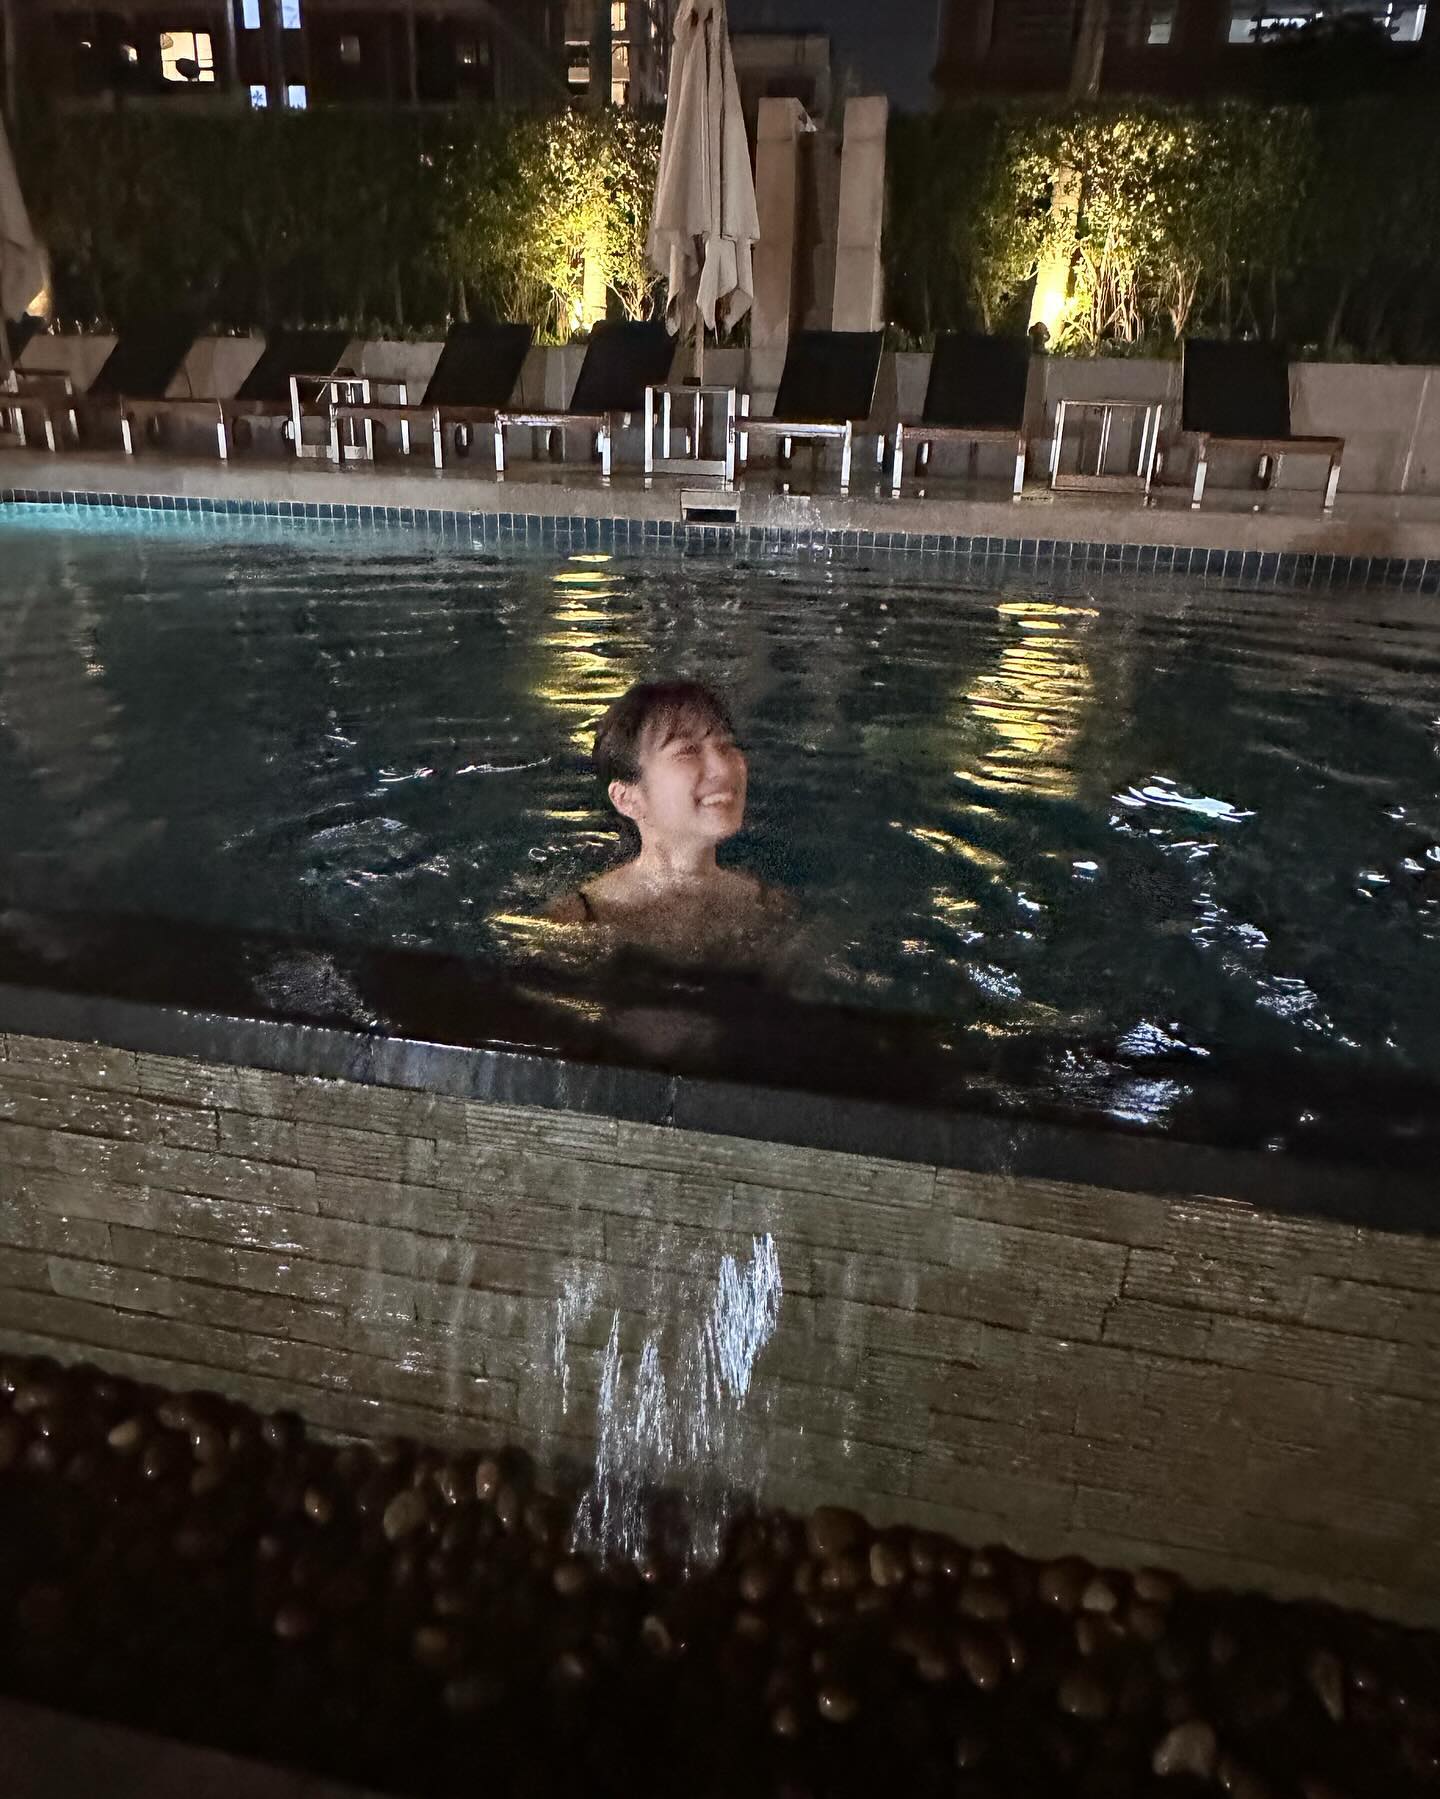 [아이즈원] 호텔 수영장에서 수영복 입은 나코 - 은비,채연 댓글